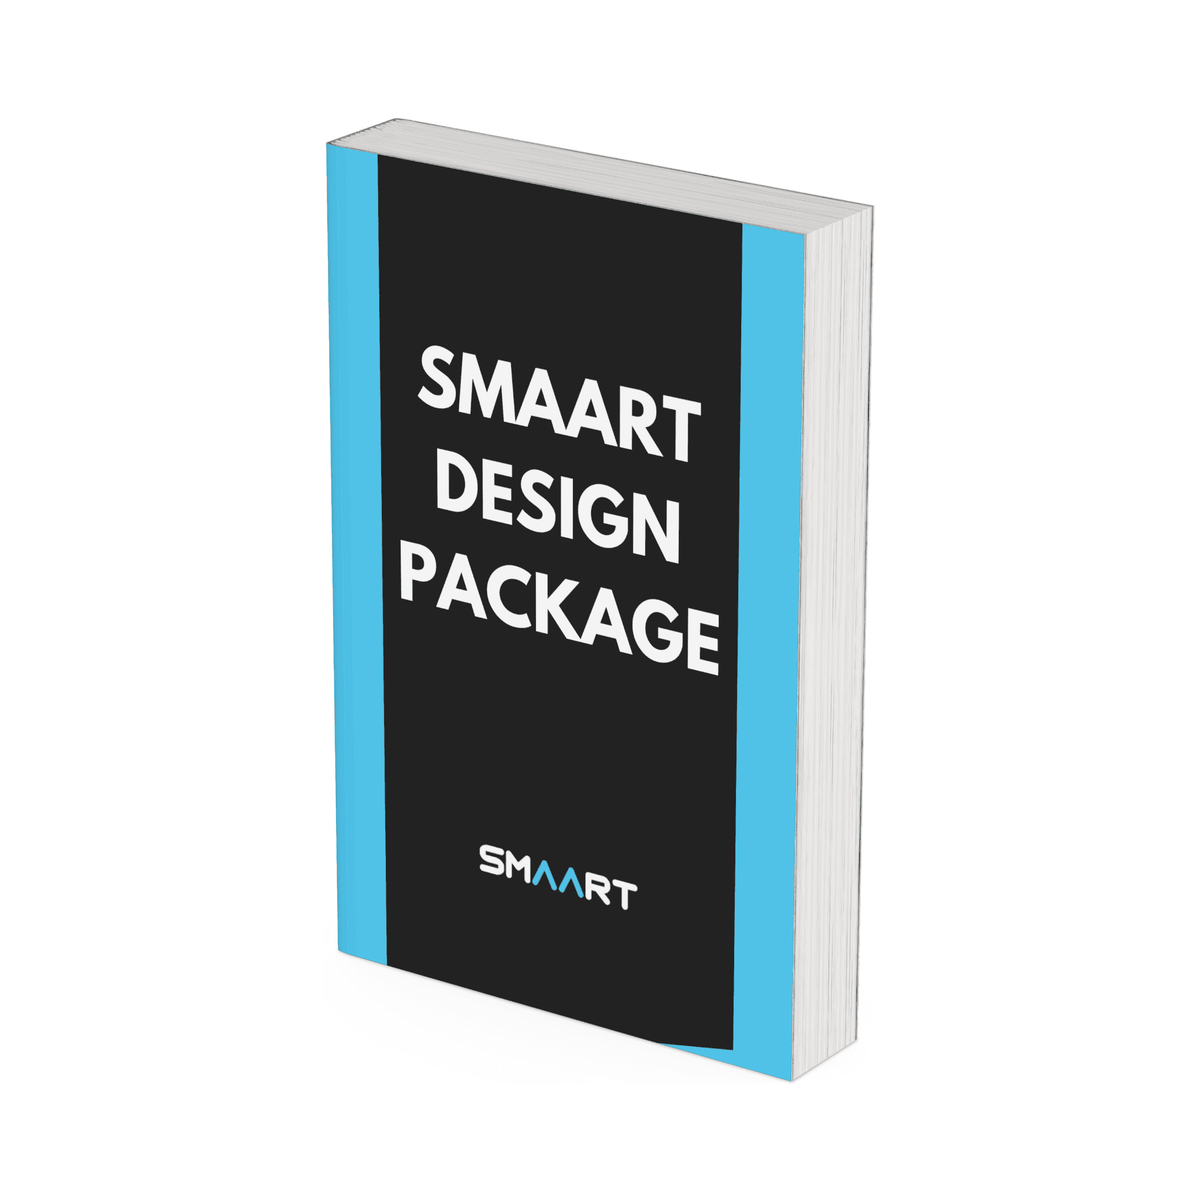 SMAART Design Package